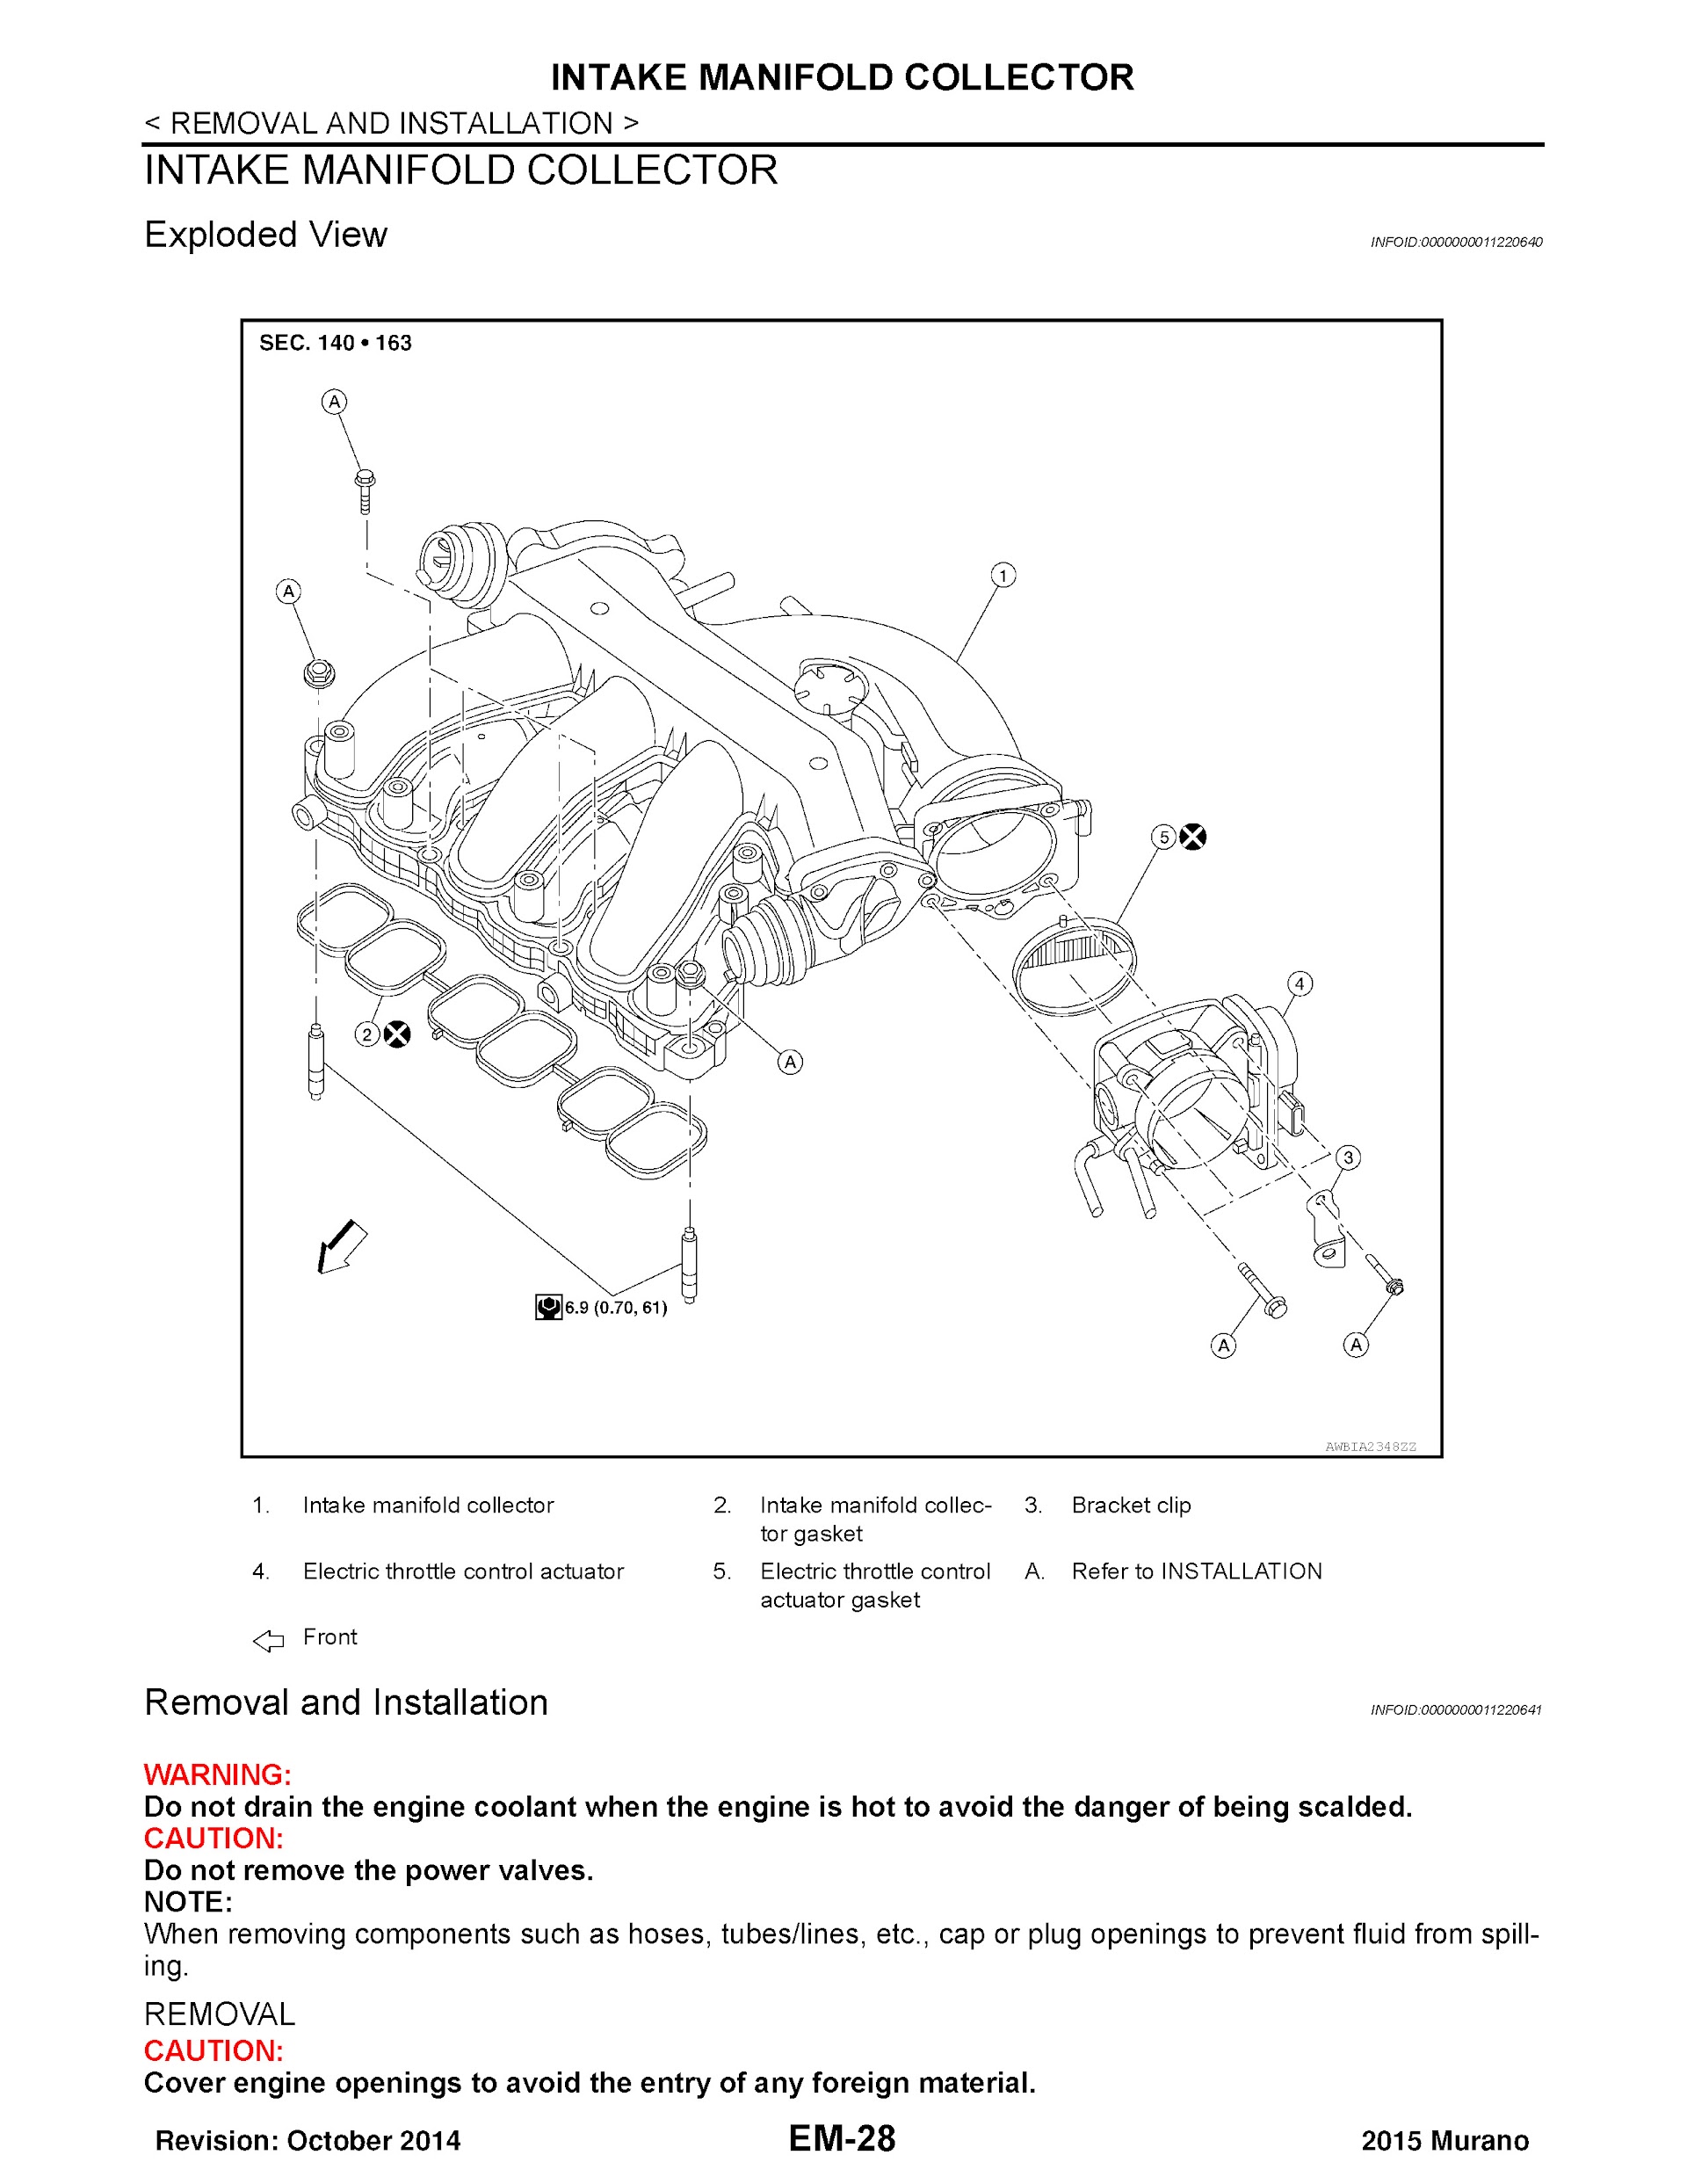 Download 2015 Nissan Murano Service Repair Manual.